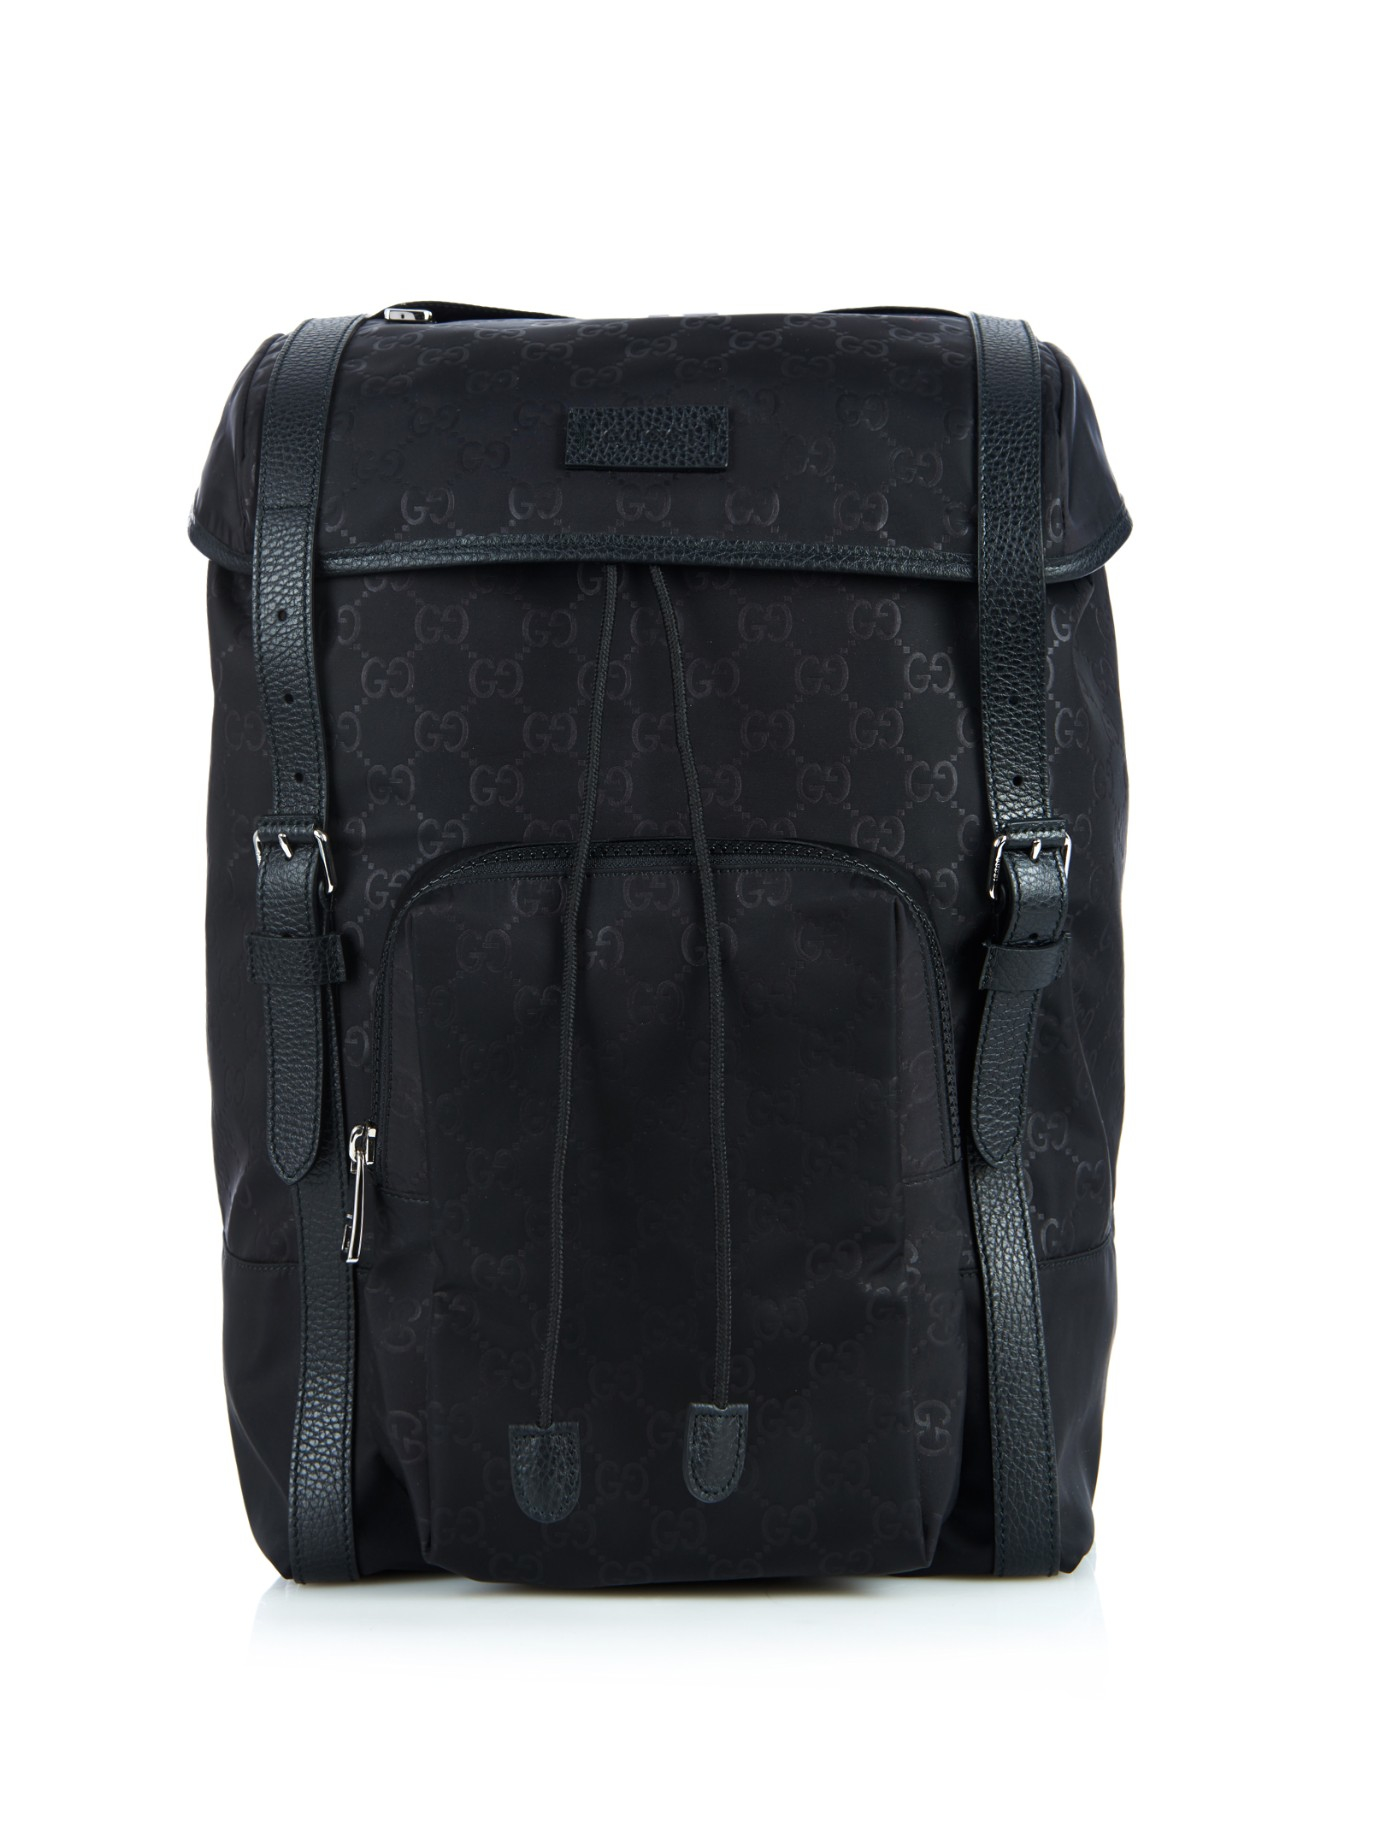 Gucci Monogram Gg Nylon Backpack in Black for Men - Lyst